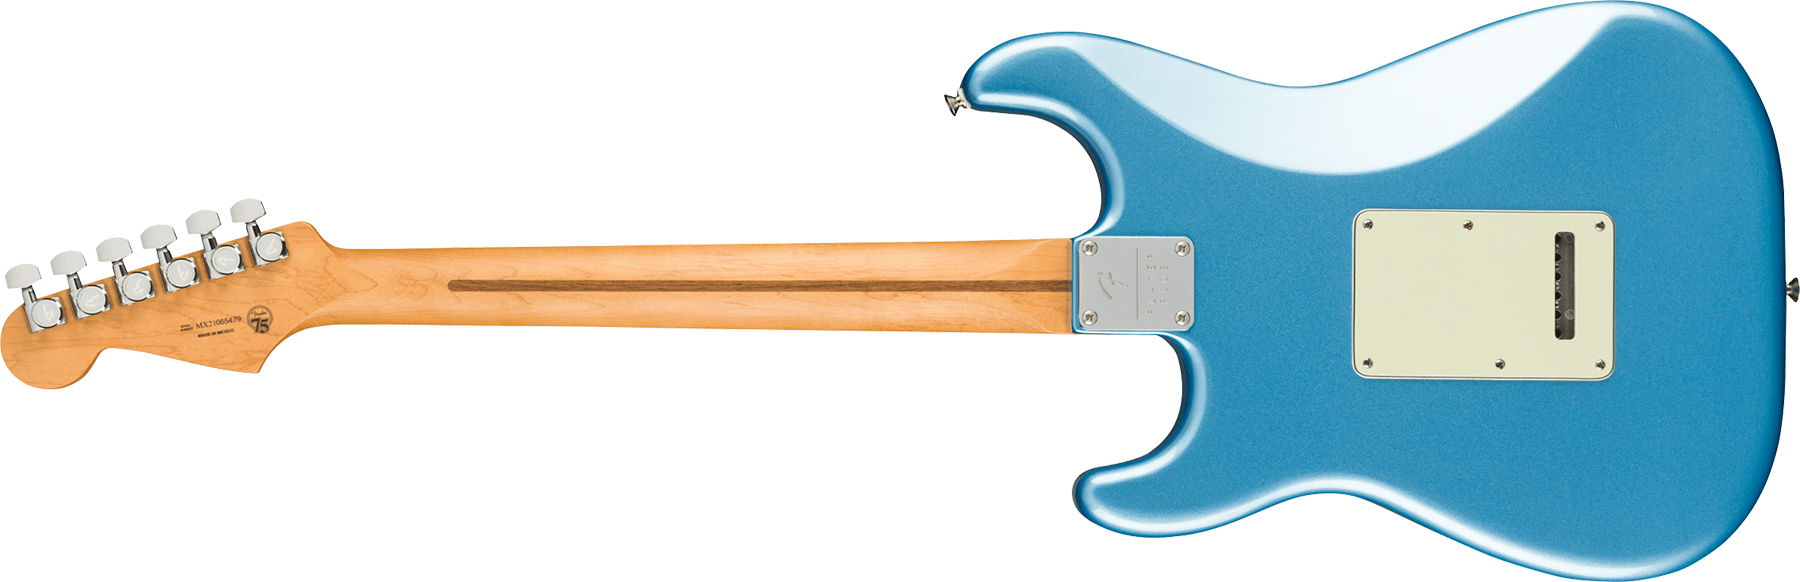 Fender Strat Player Plus Mex 3s Trem Pf - Opal Spark - Elektrische gitaar in Str-vorm - Variation 1